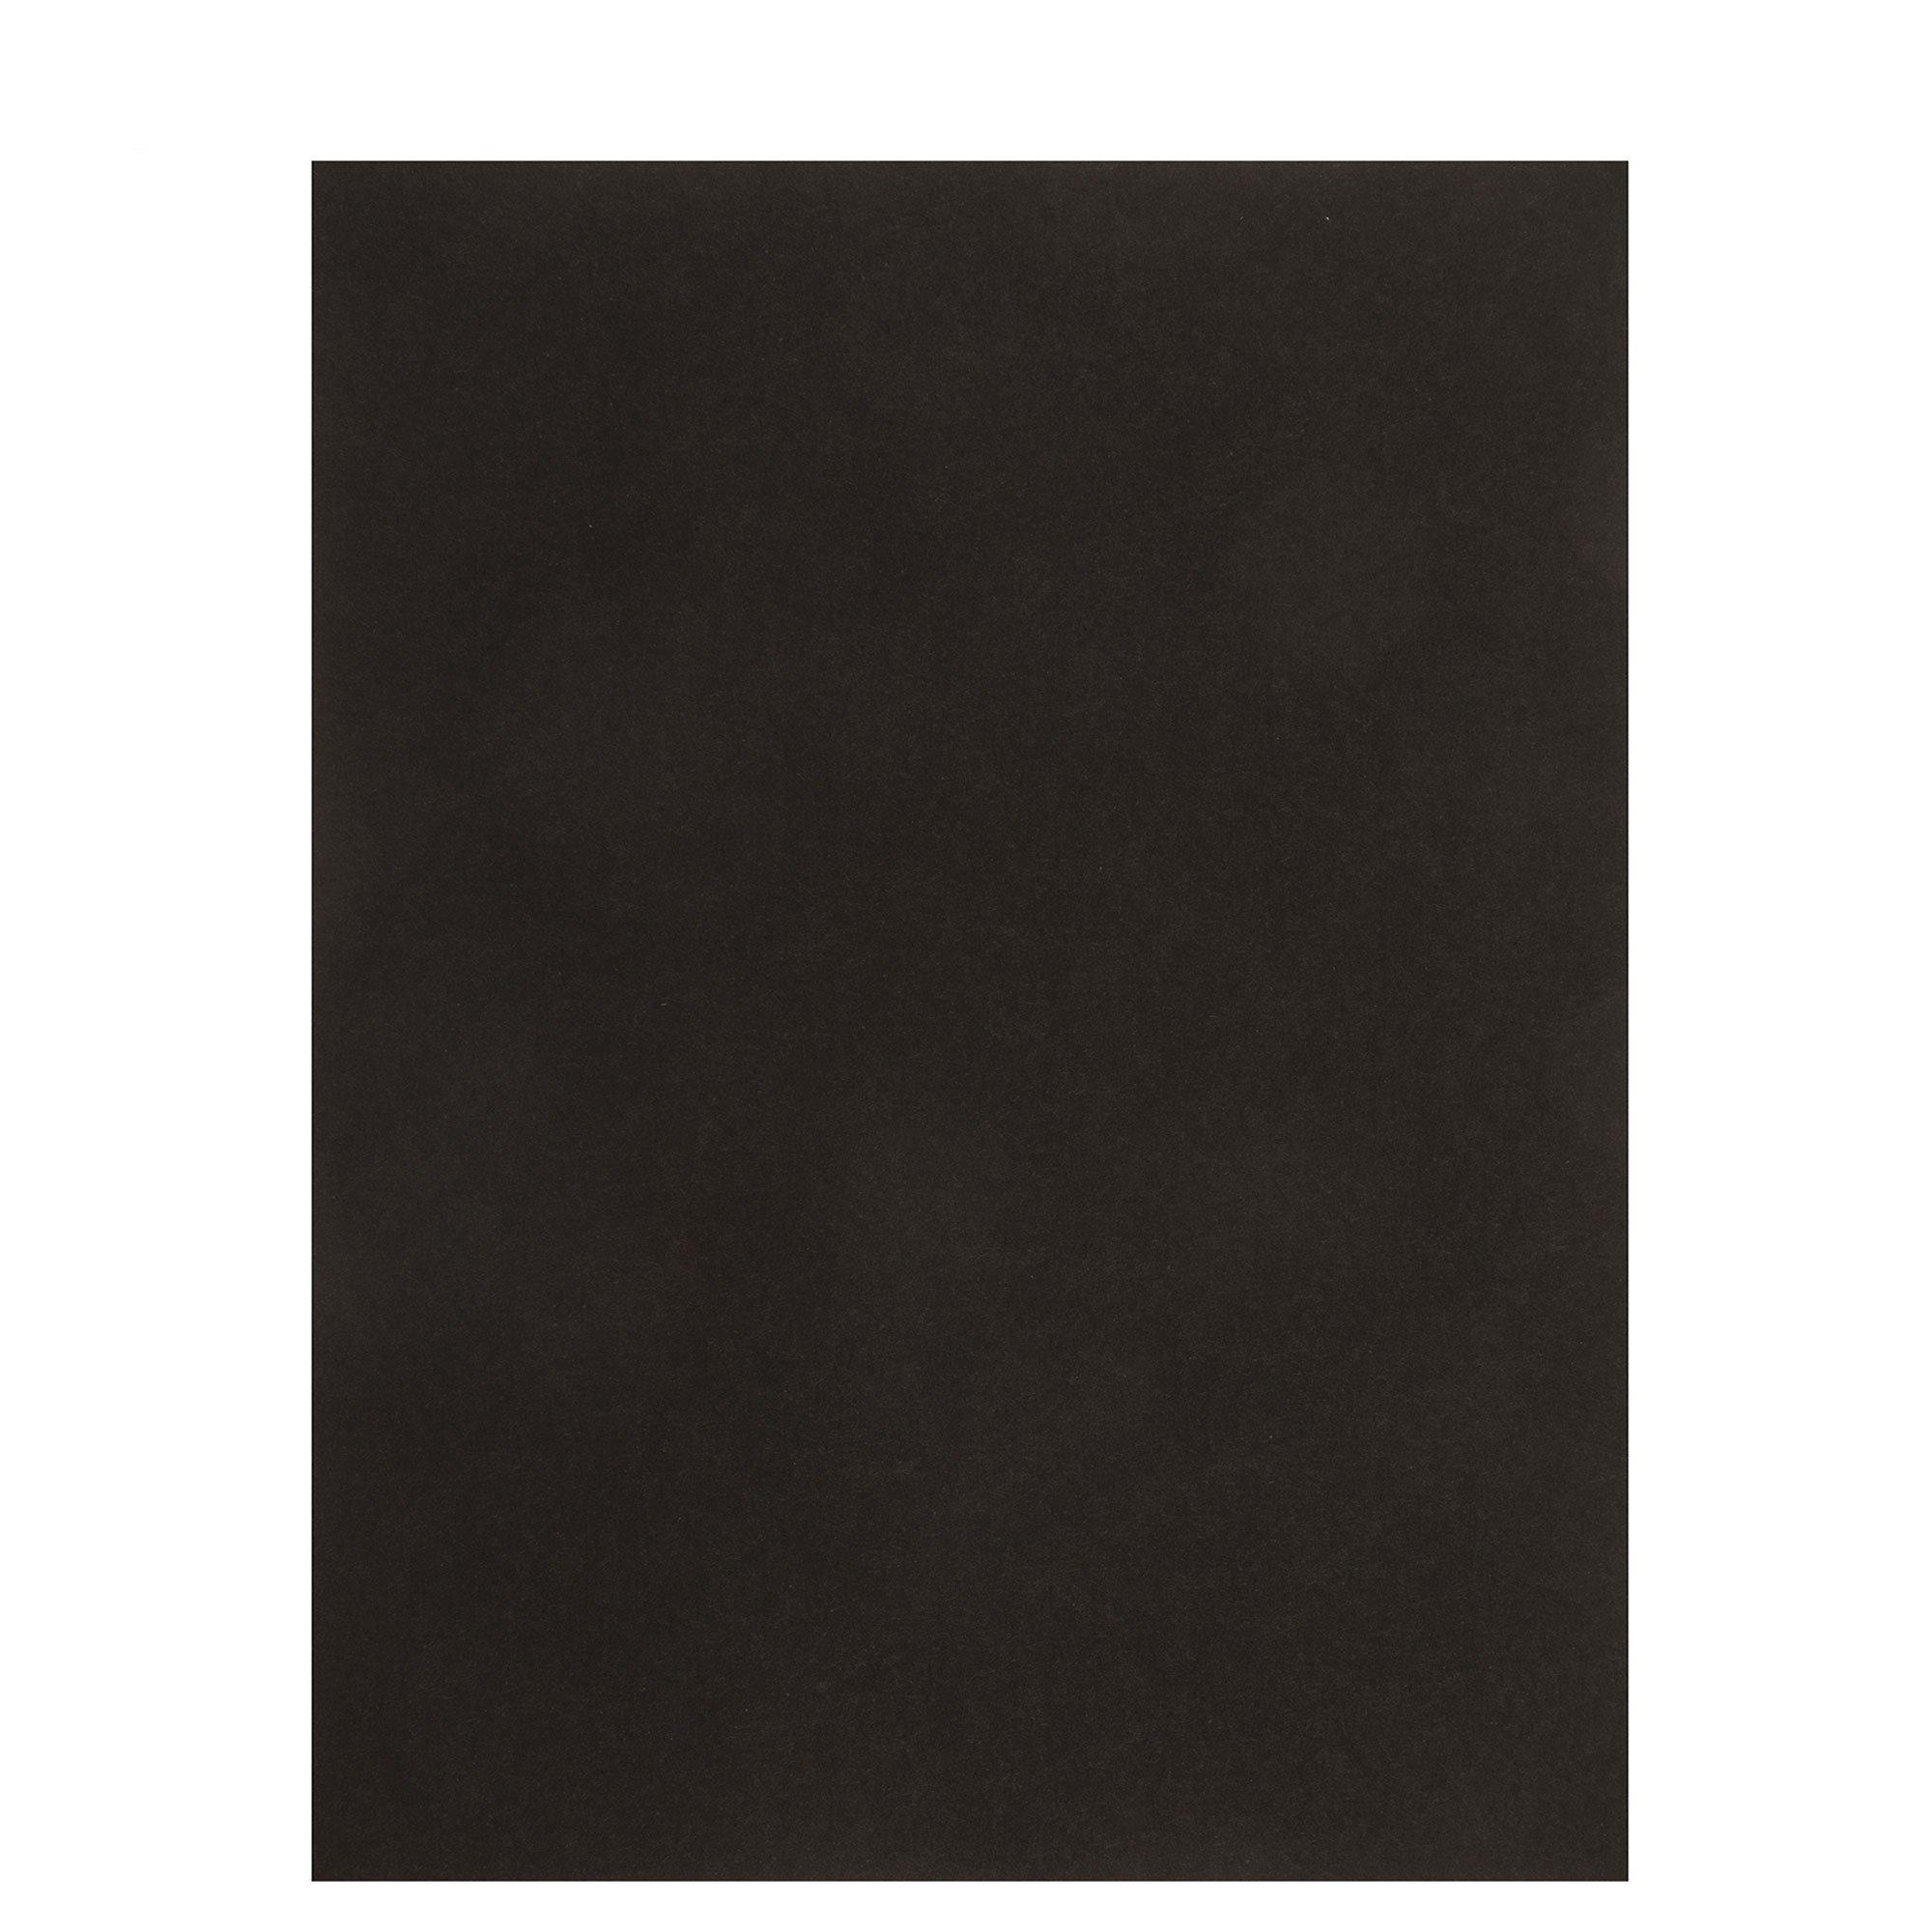  Black Cardstock 12x12-100 Sheets Black Card Stock